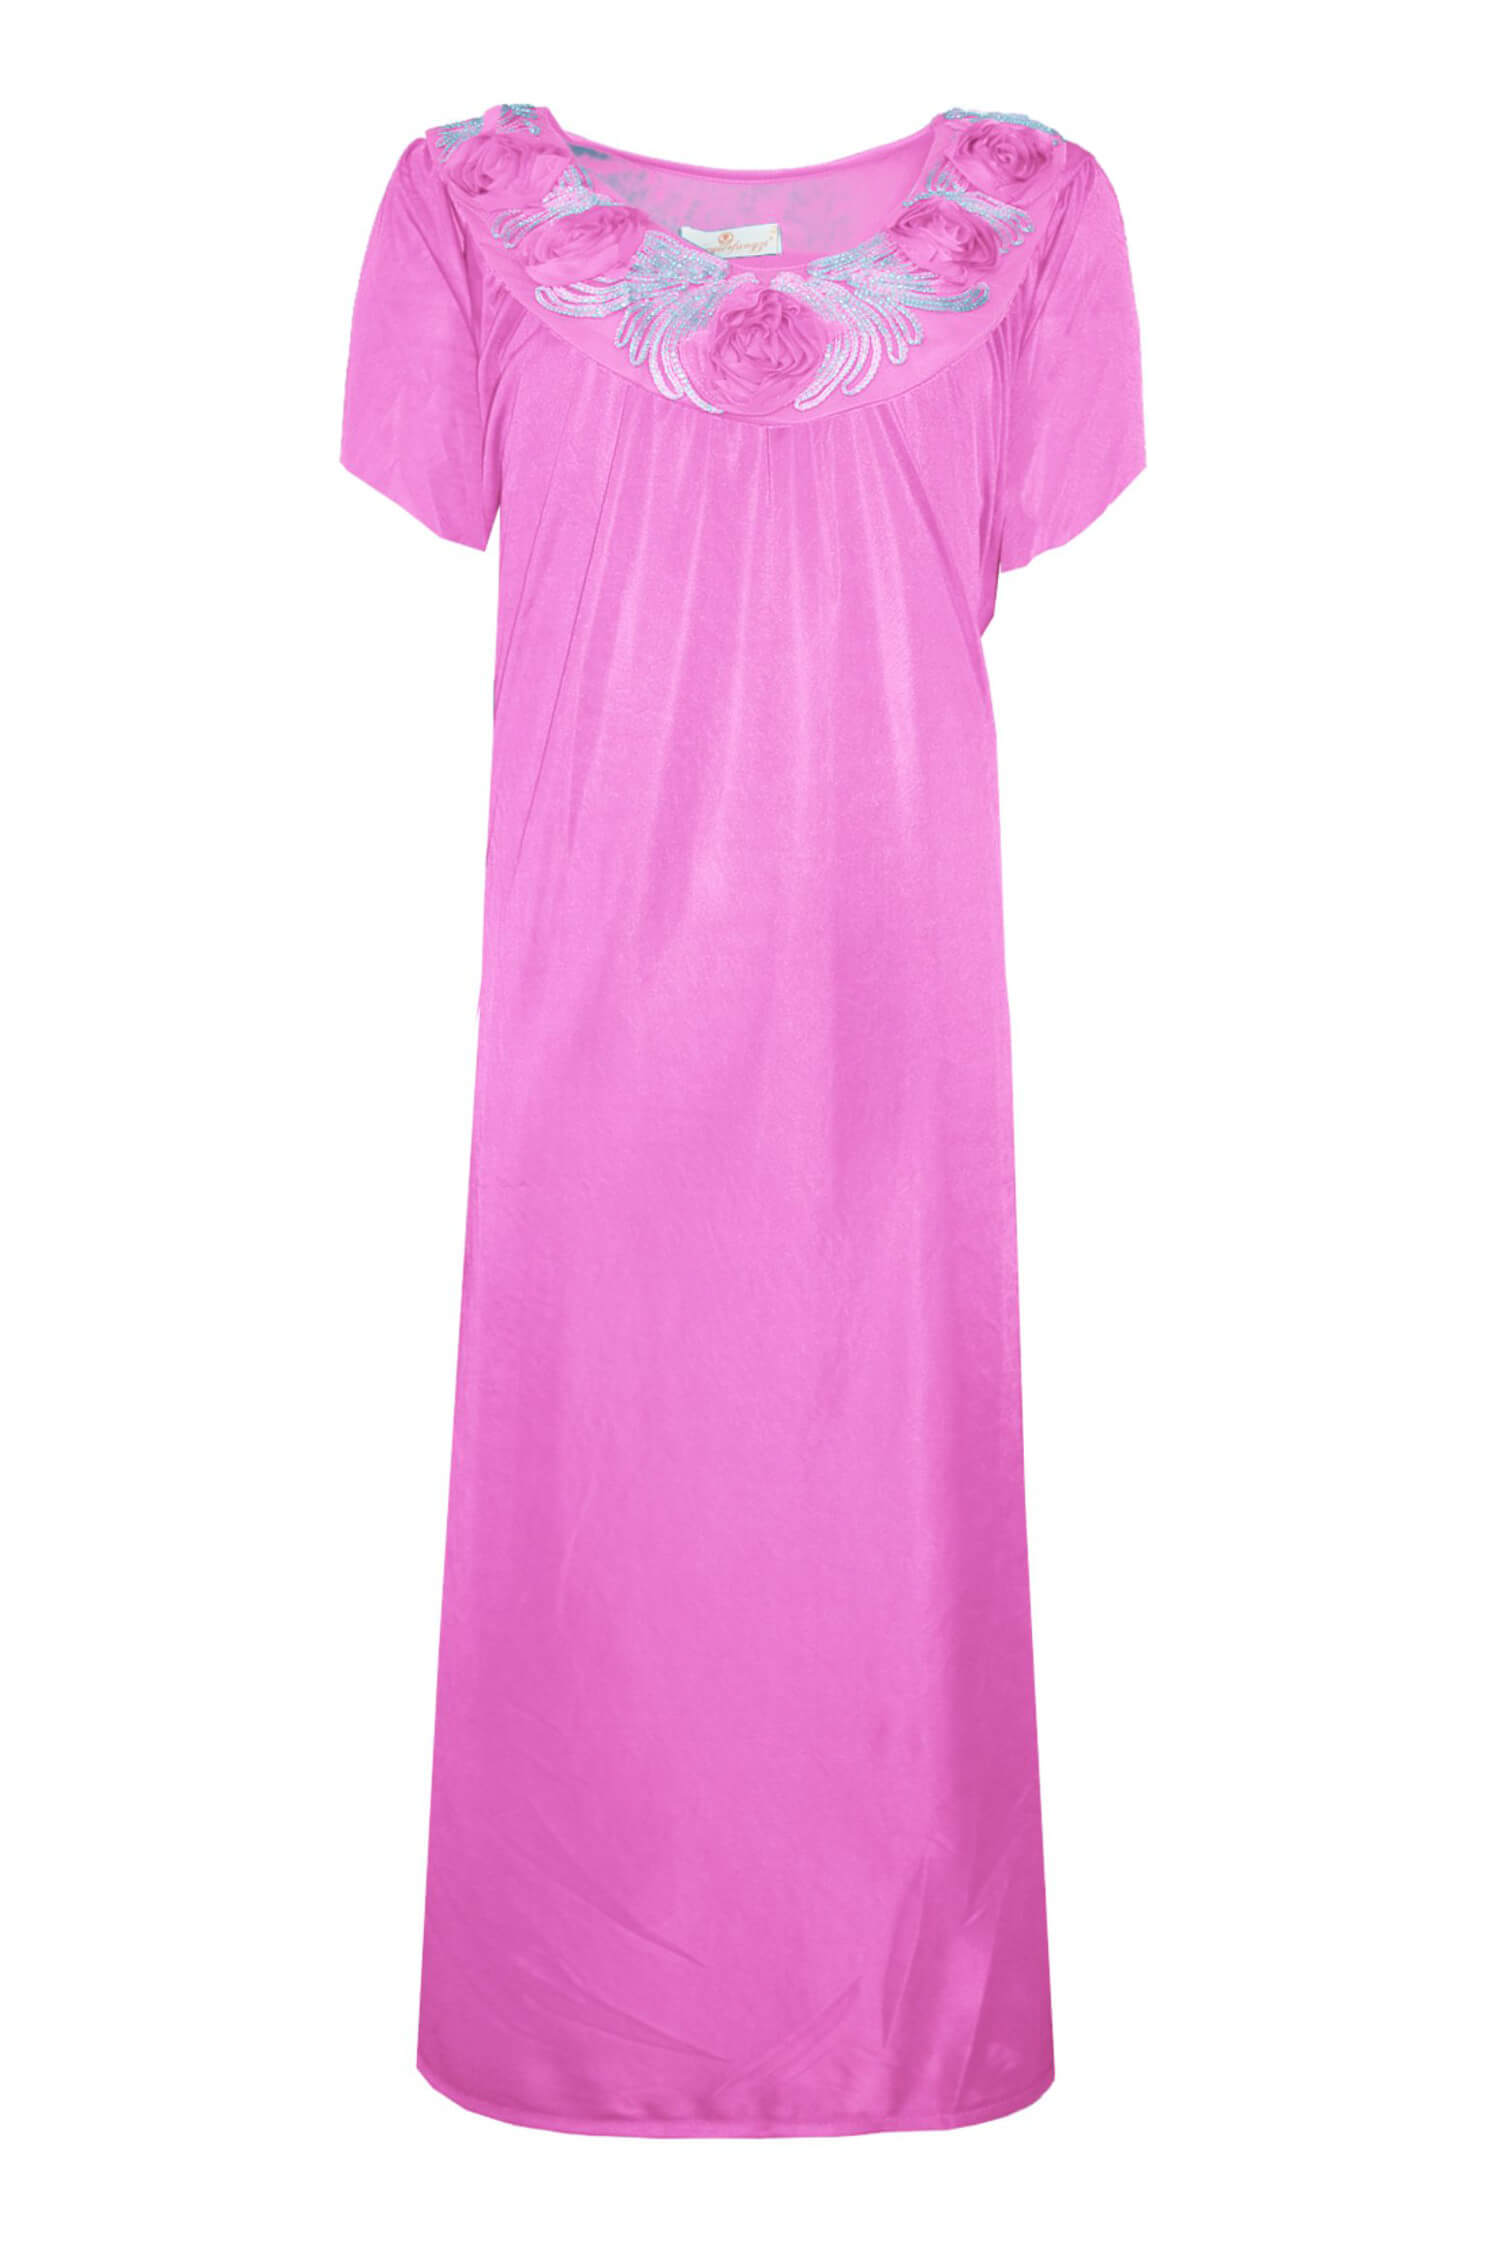 Hanička noční košilka s krátkým rukávem 1105 XXL světle růžová